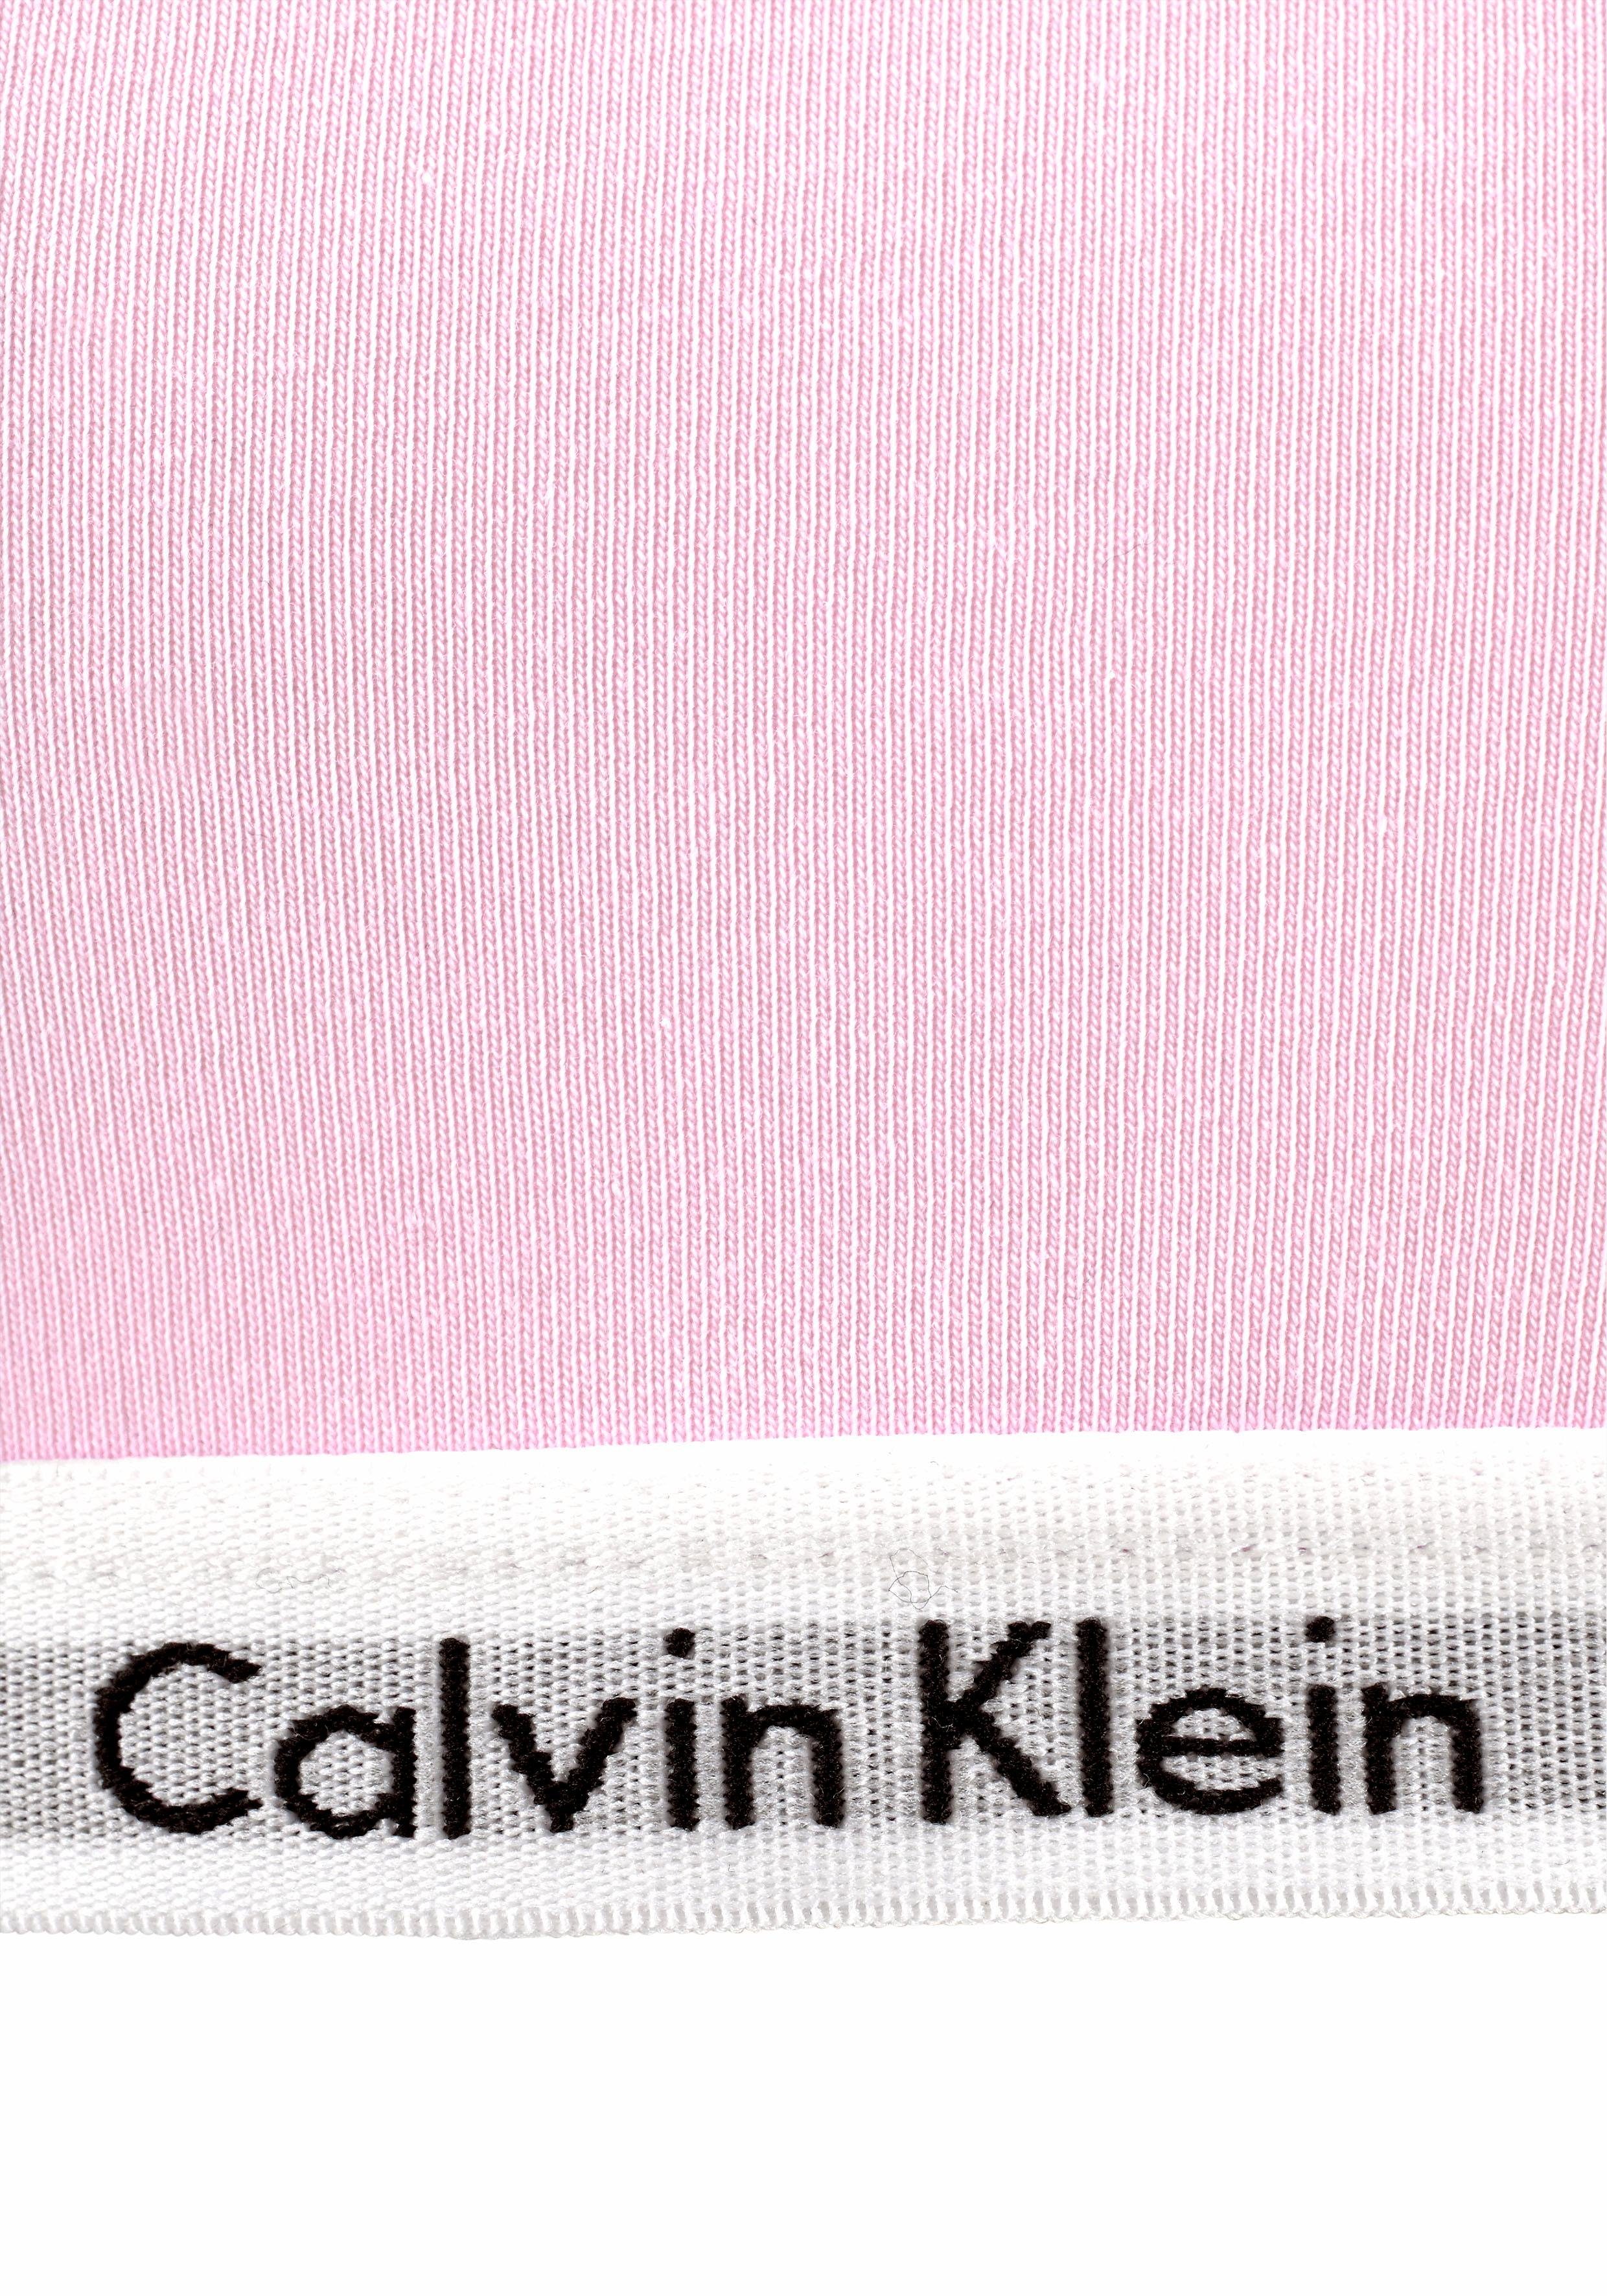 (2 Calvin Klein mit Mädchen Logobund Underwear Stück) Bustier -